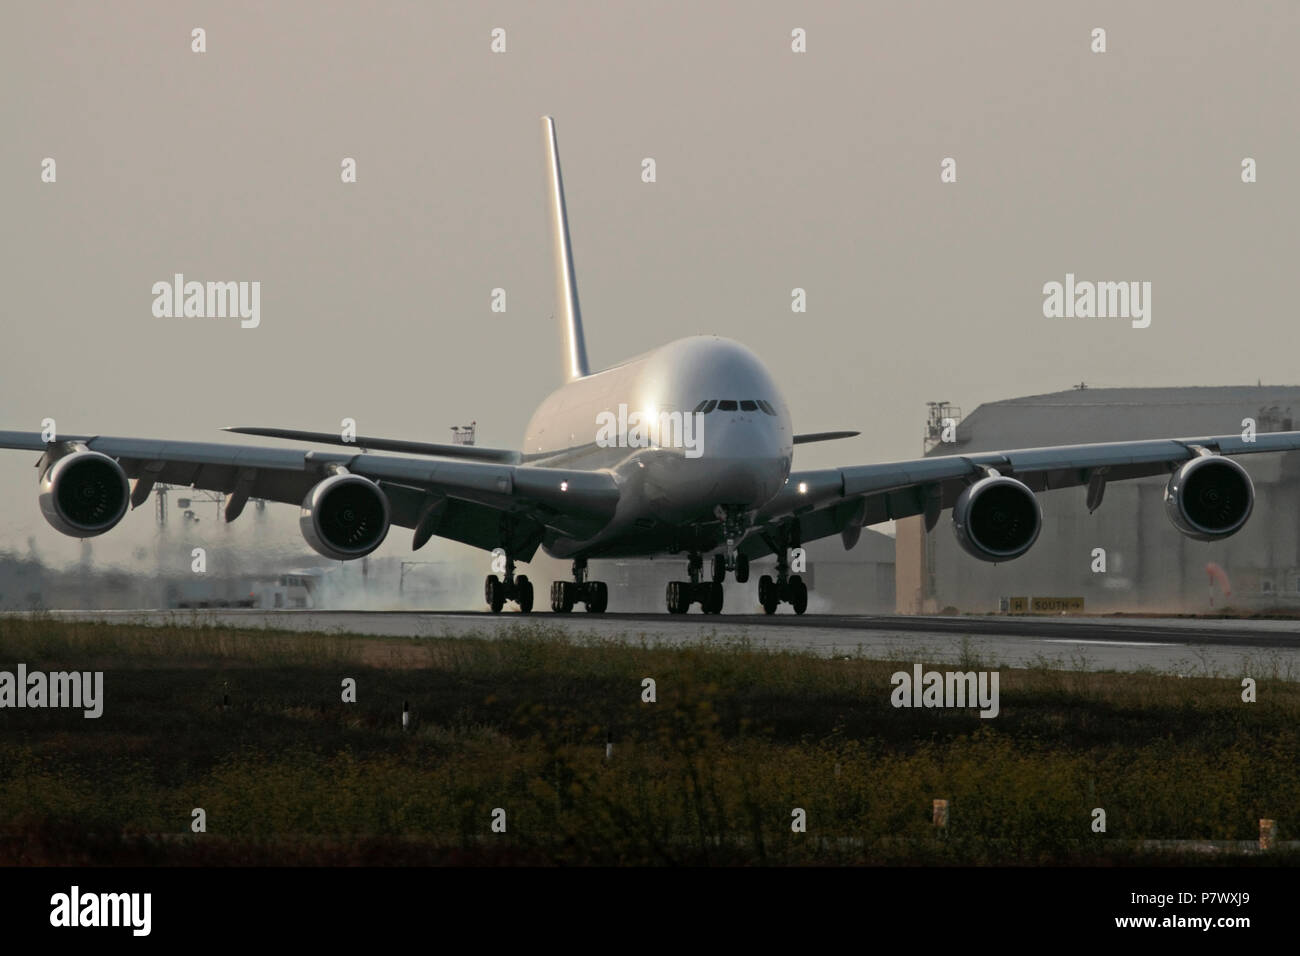 Airbus A380 moteur à quatre passagers long-courriers jet airplane landing sur la piste avec la fumée des pneus sur des roues. Pas de livery ou propriétaires de détails Banque D'Images